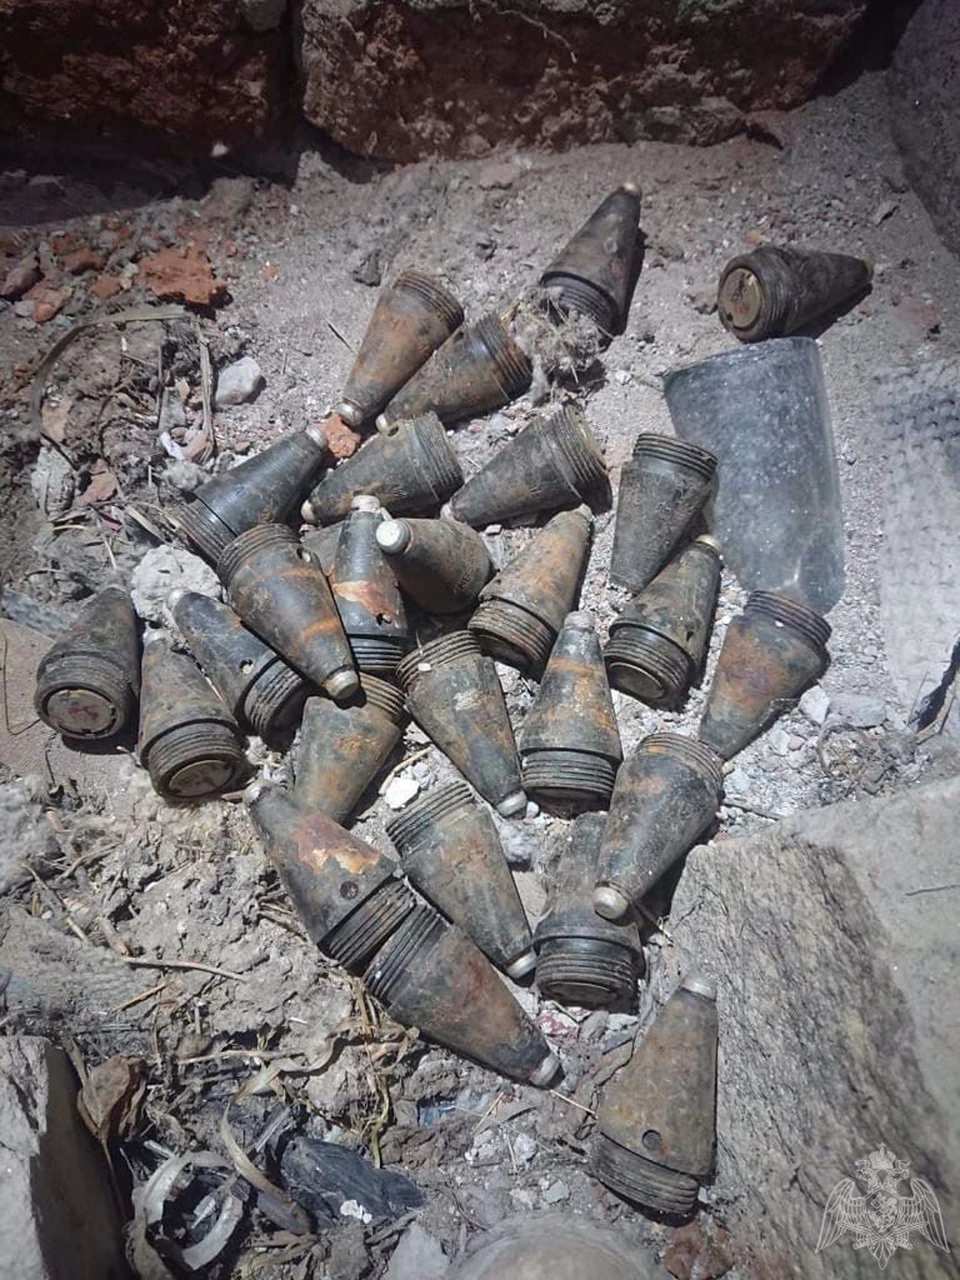 При неосторожном обращении найденные снаряды могли легко сдетонировать. Фото: пресс-служба Росгвардии по Челябинской области